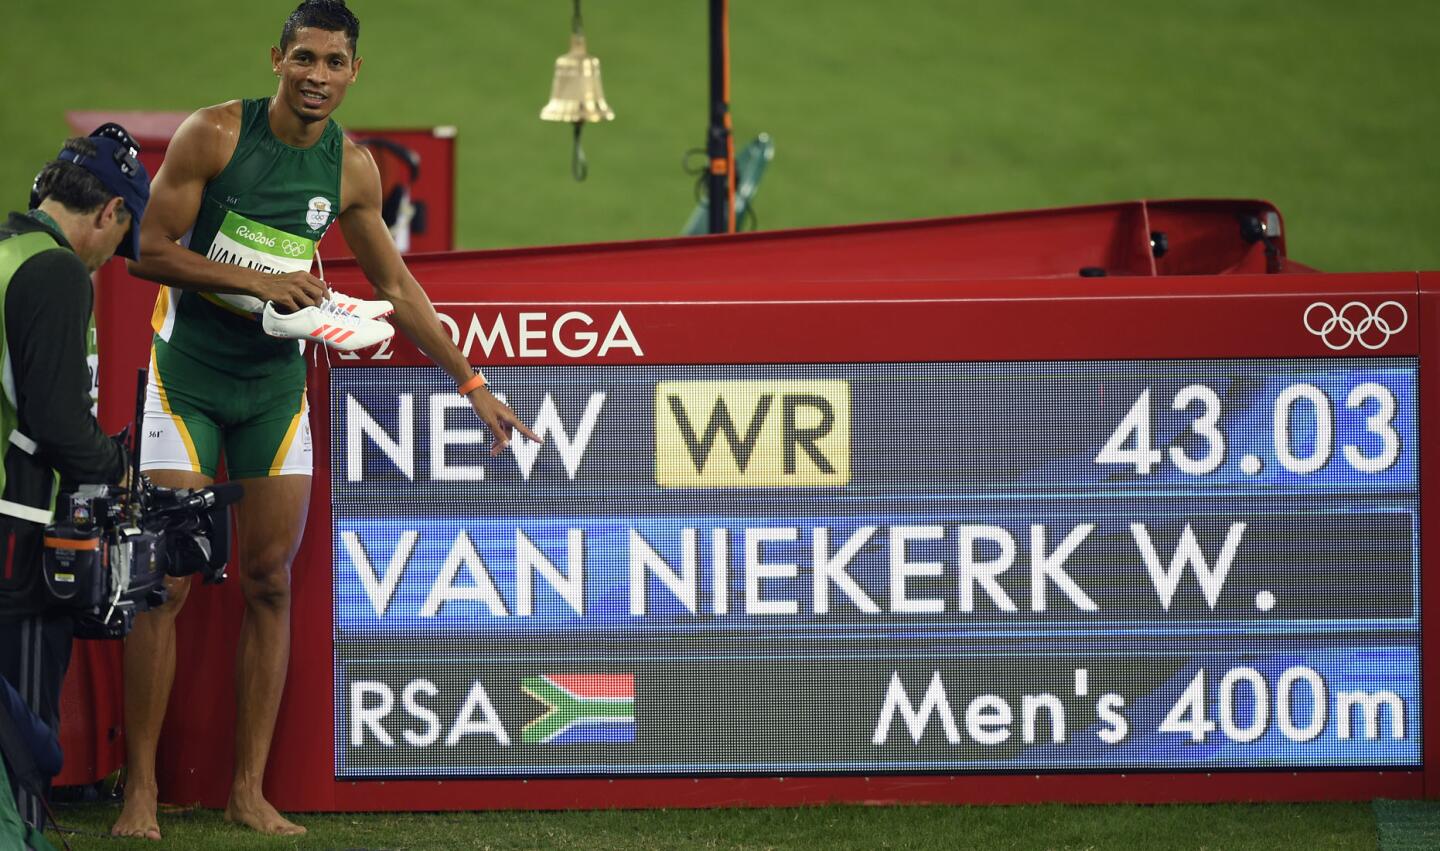 El sudafricano Wayde Van Niekerk festeja al lado del reloj con su tiempo récord en los 400 metros en los Juegos Olímpicos de Río 2016.